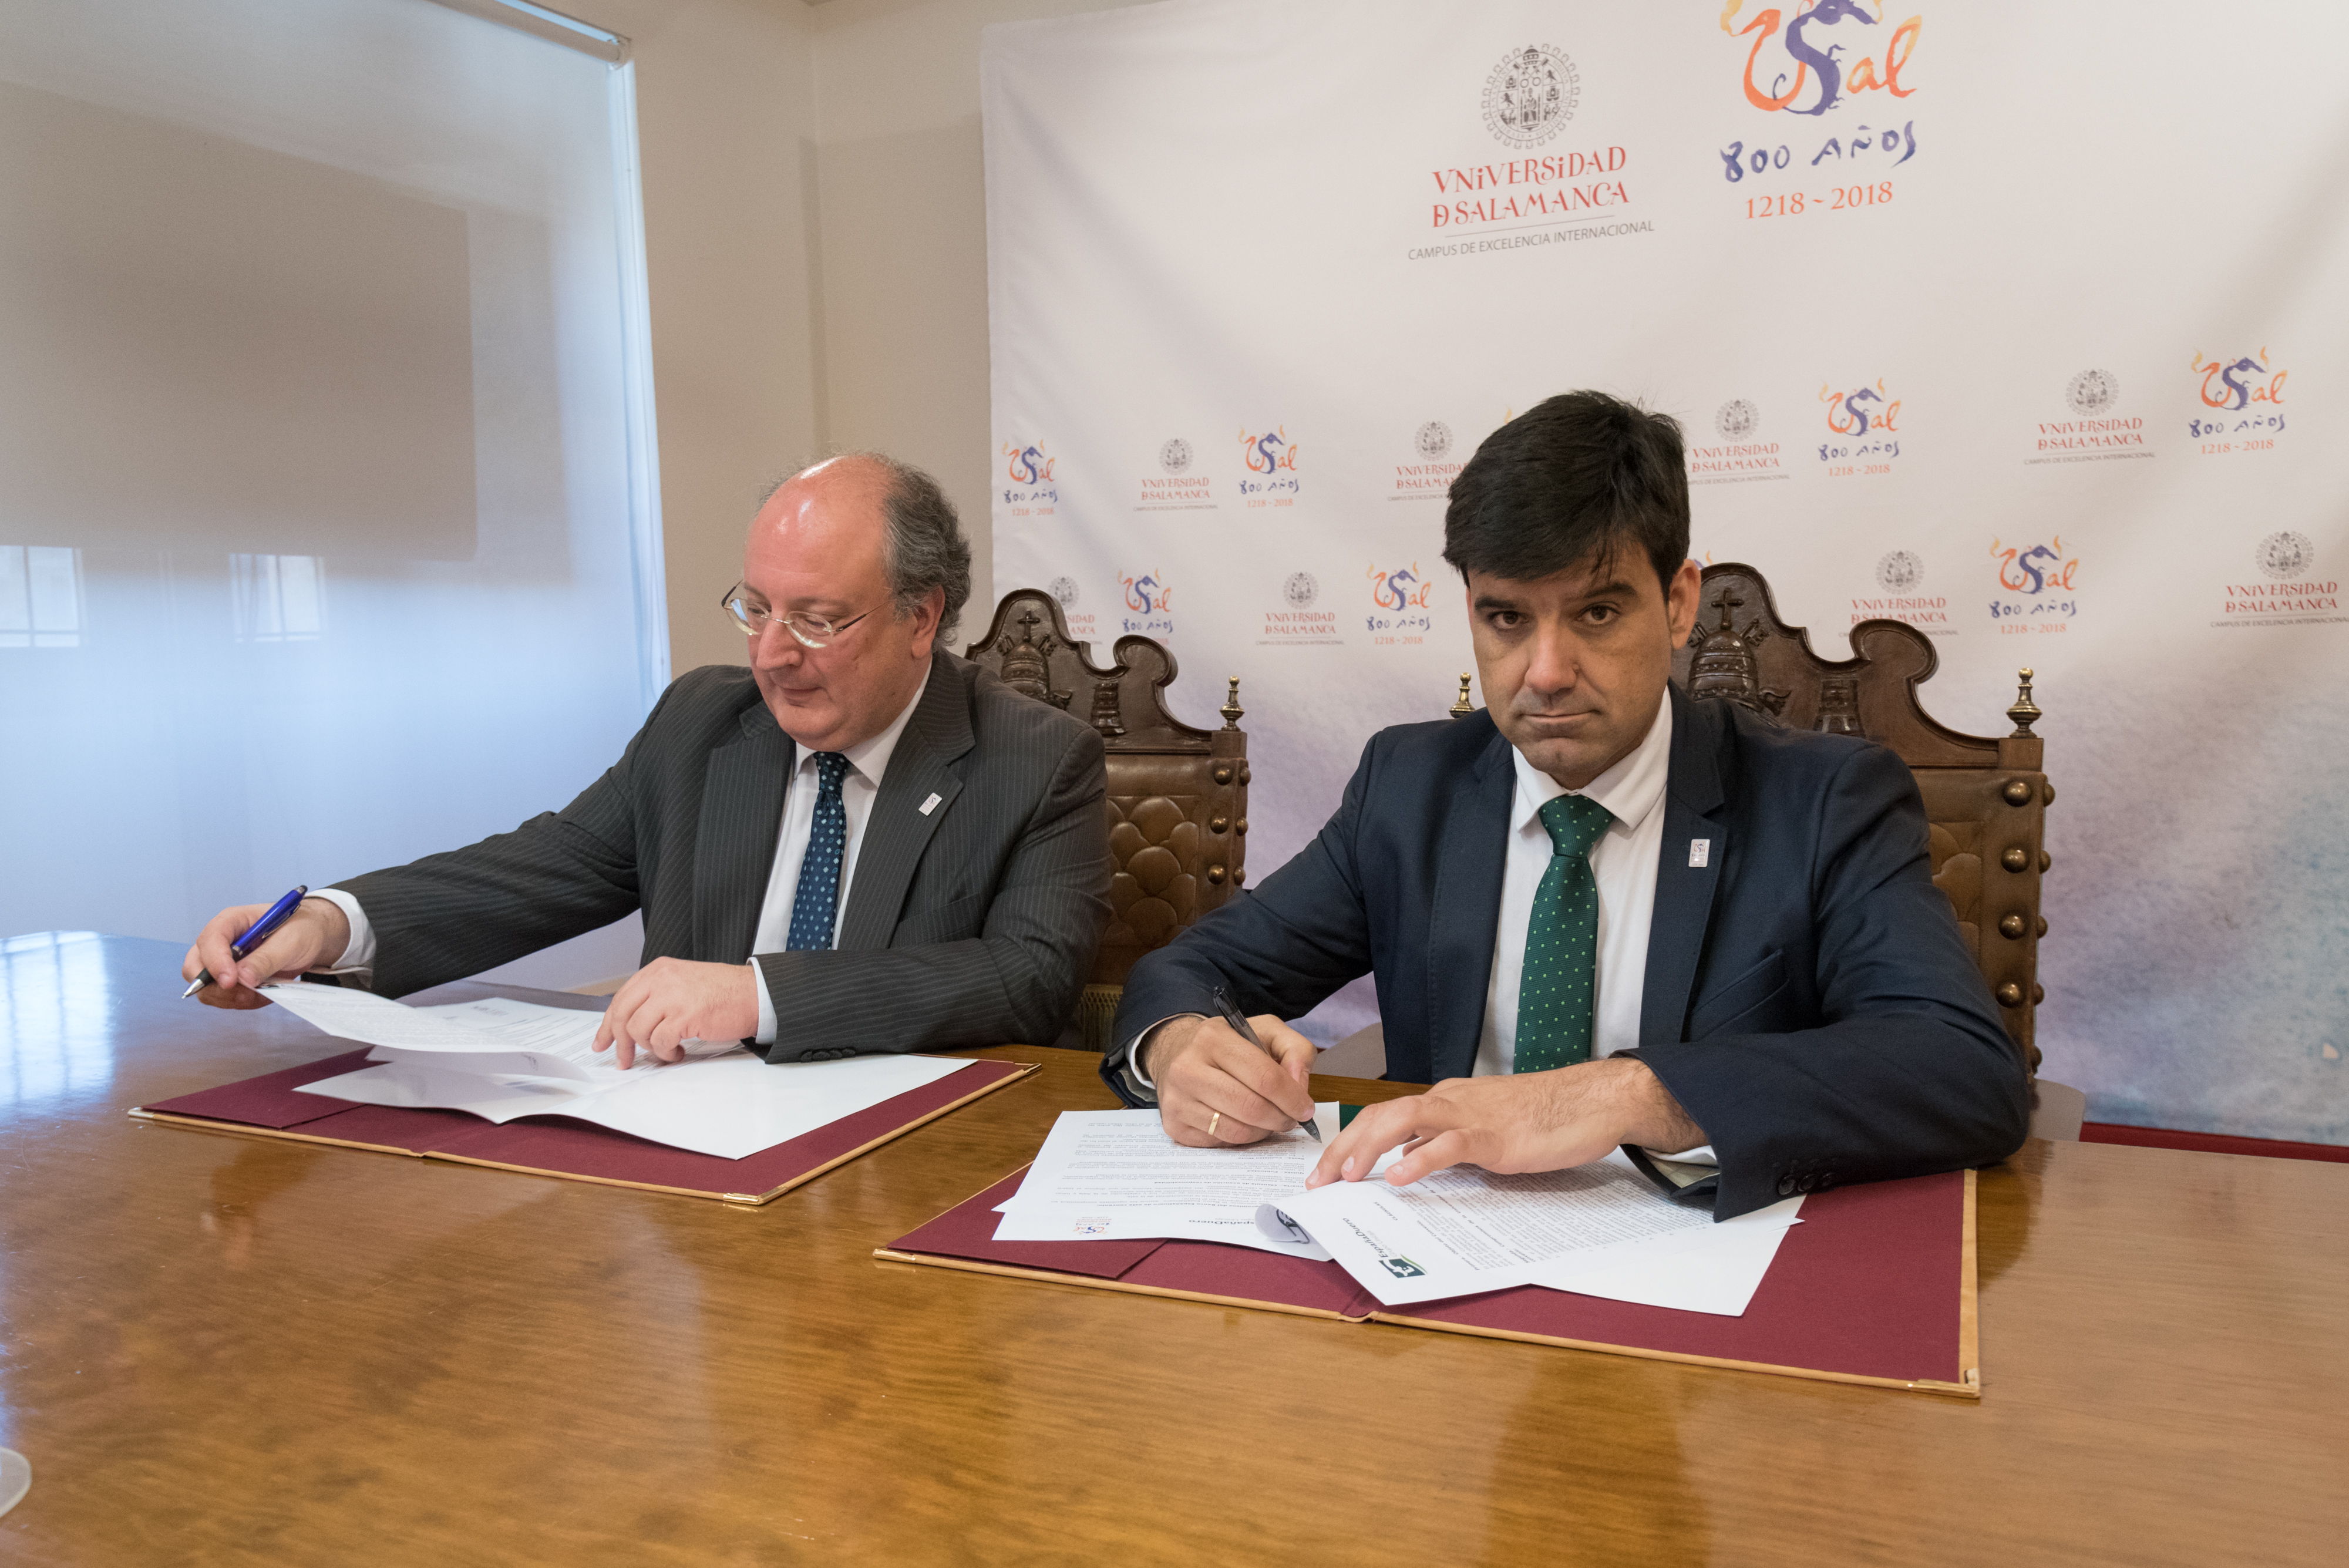 La Universidad de Salamanca y EspañaDuero firman un acuerdo de colaboración con motivo del VIII Centenario 